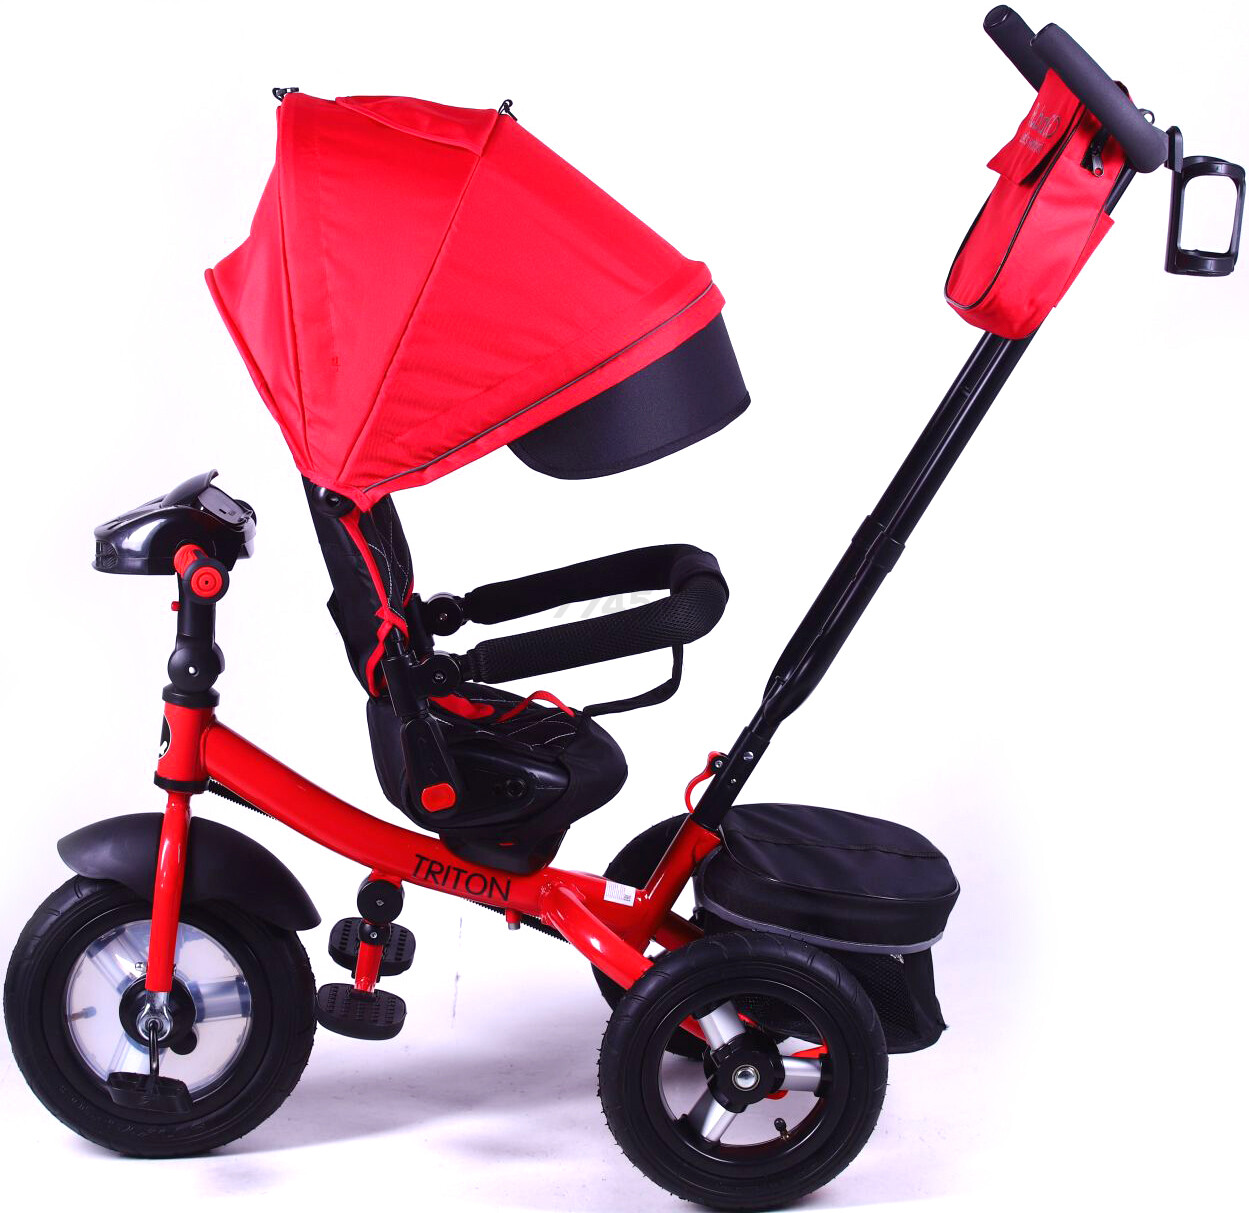 Велосипед детский трехколесный BUBAGO Triton Black c Bluetooth (BGT-B-0523) - Фото 4